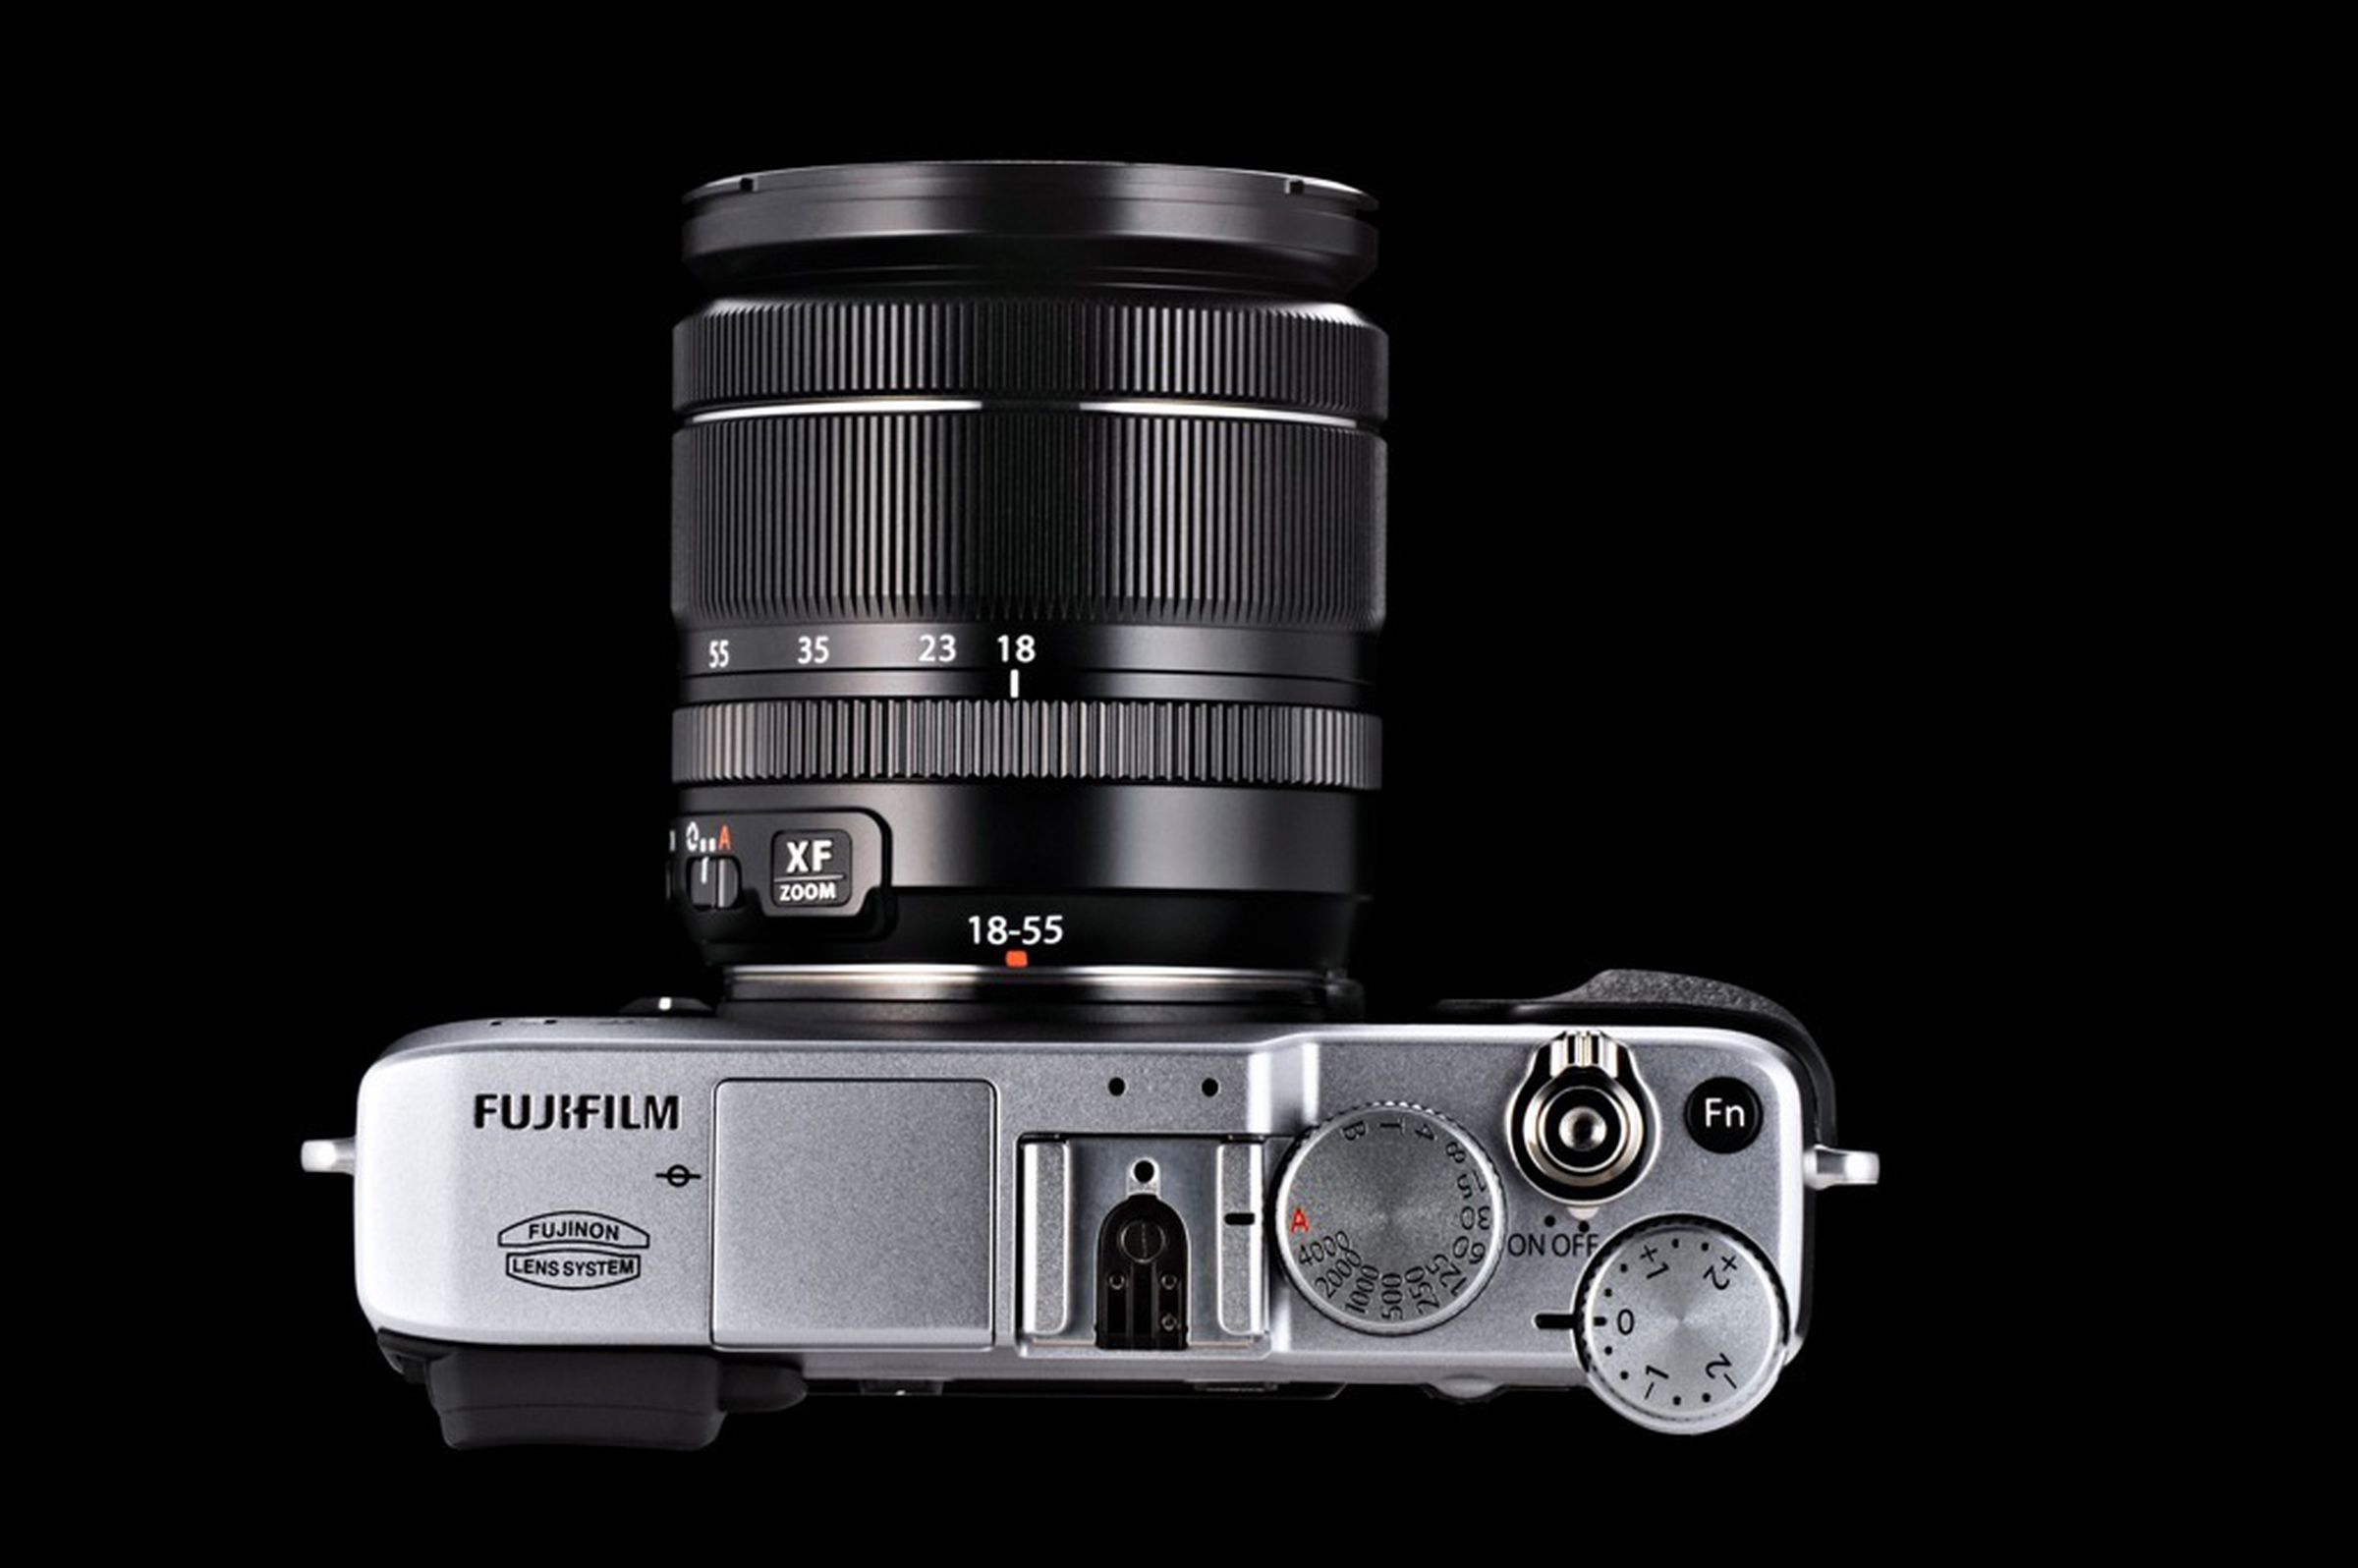 Fujifilm X-E1 press pictures